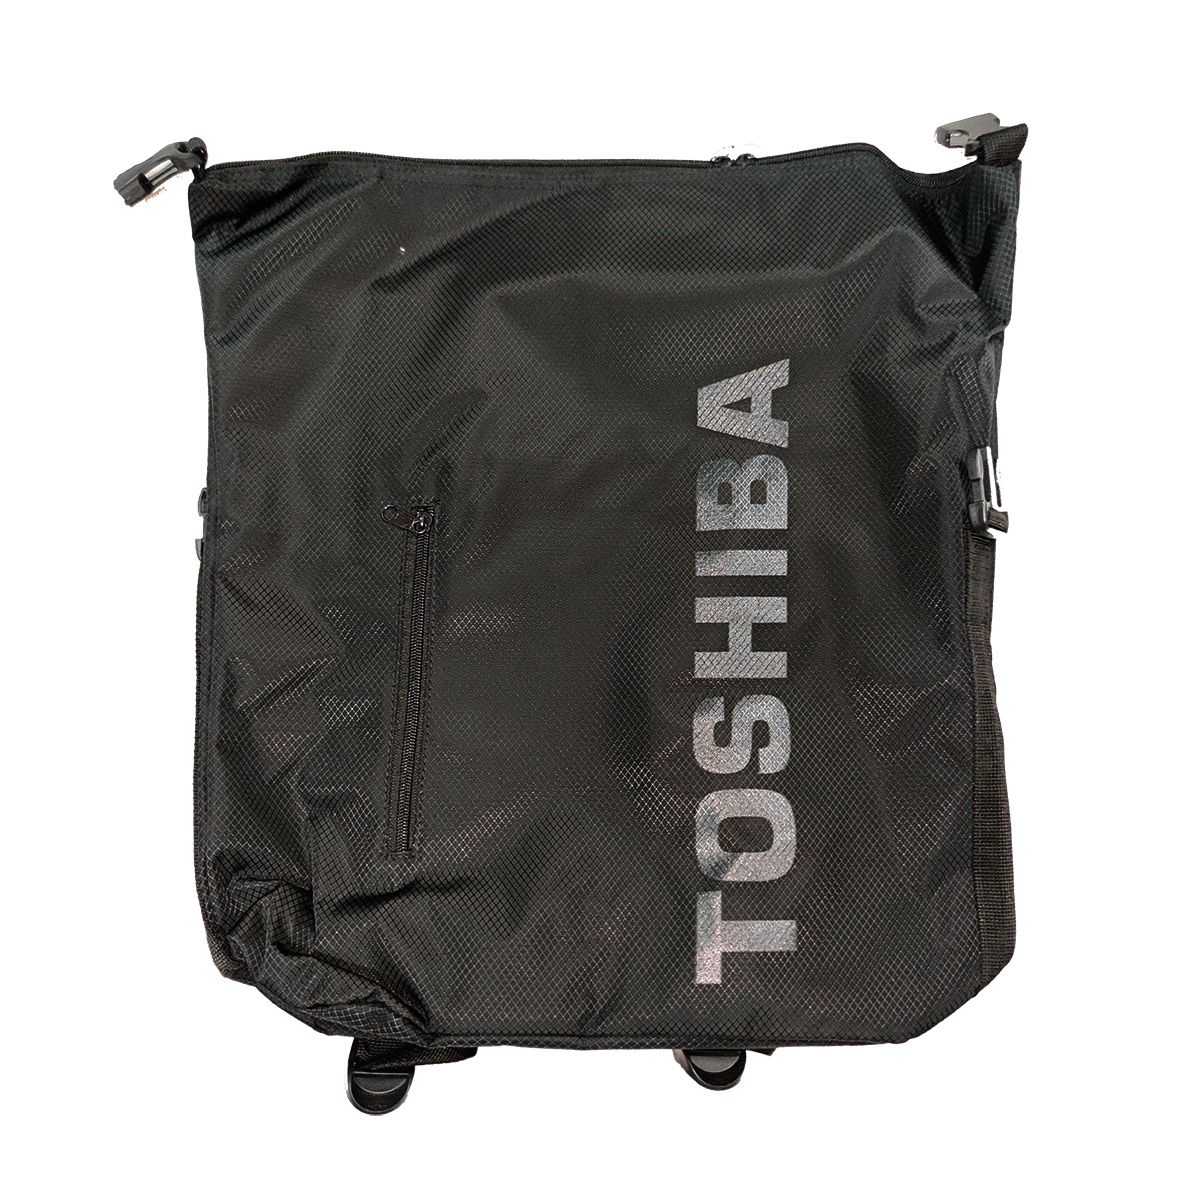 กระเป๋า TOSHIBA สีดำ